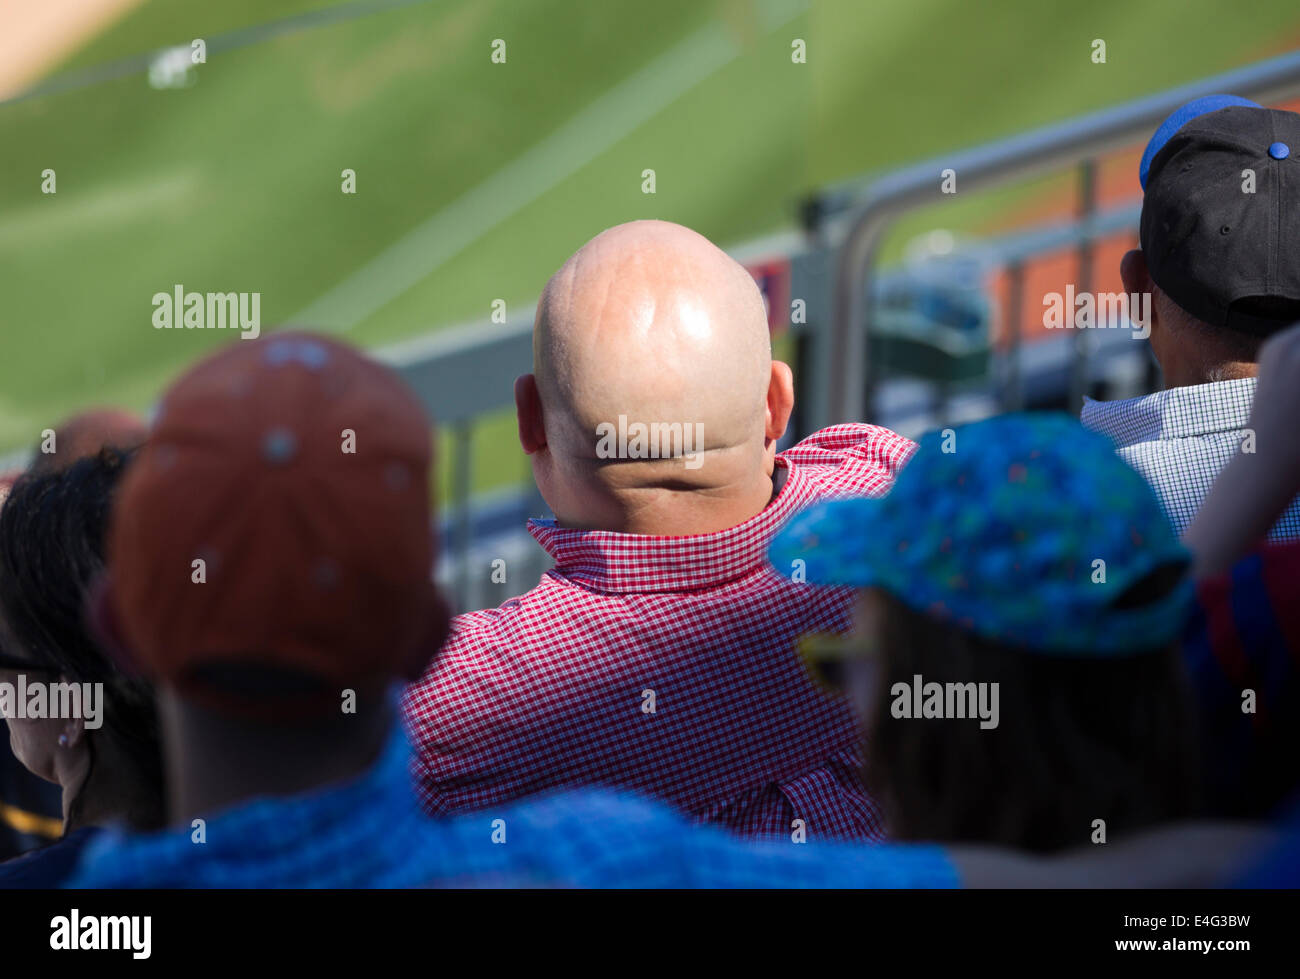 Homme avec tête rasée à un jeu de base-ball Banque D'Images